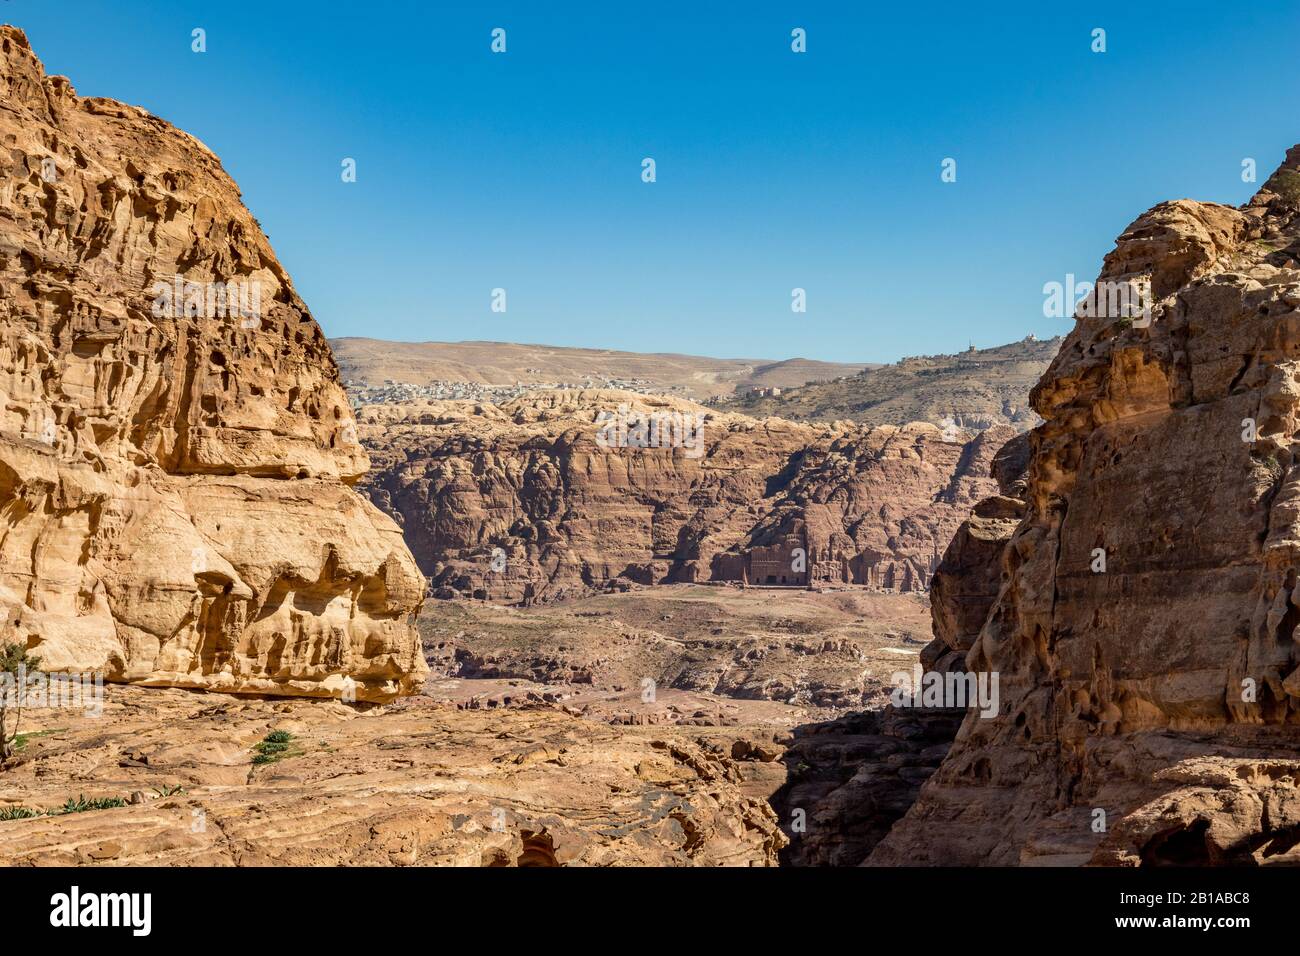 Ho apprezzato le fantastiche vedute dalla strada del Monastero dei paesaggi, bella giornata di sole al complesso di Petra e attrazione turistica, Regno hascemita di Giordania Foto Stock